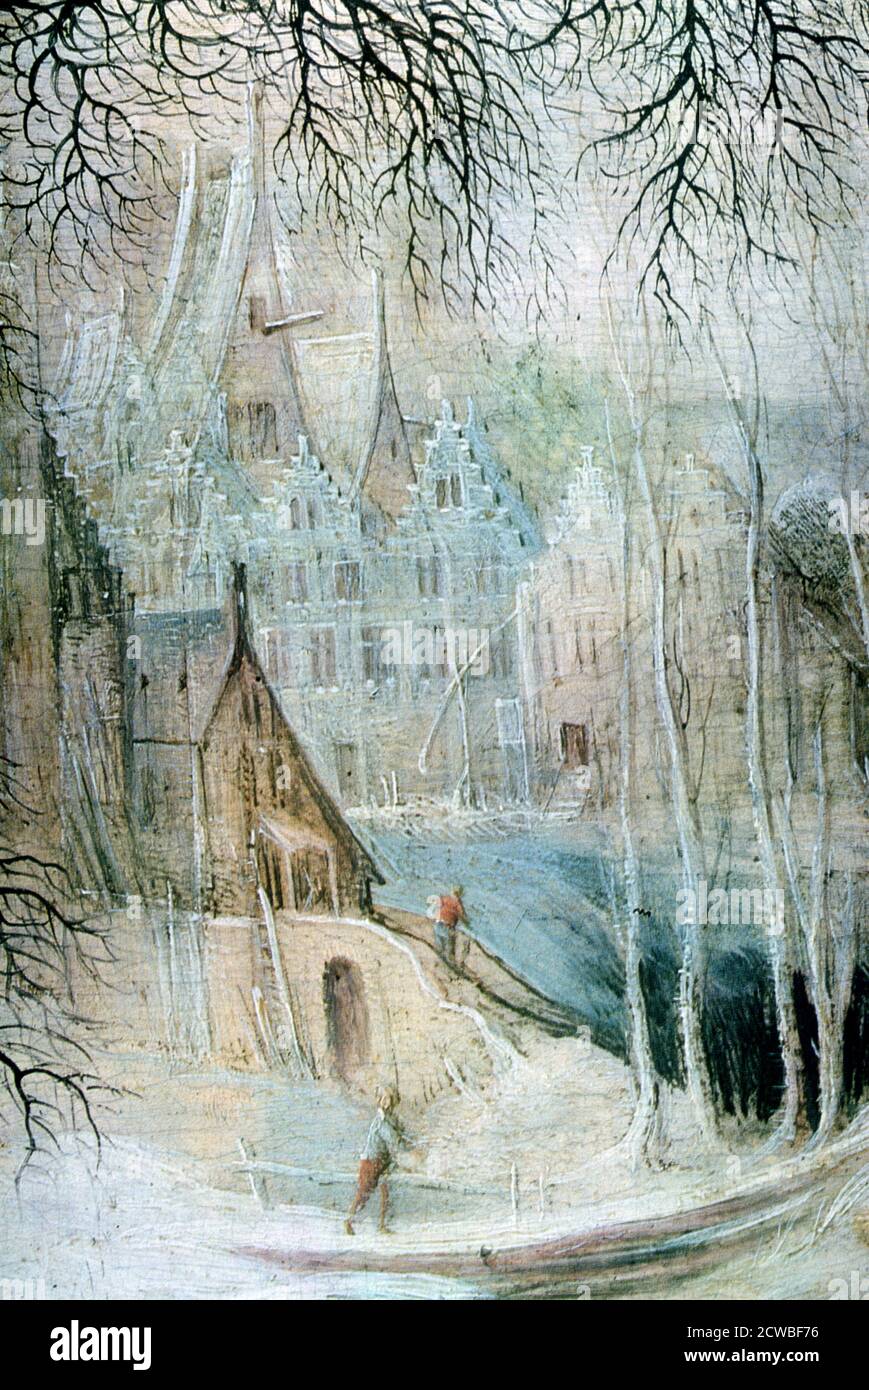 A Winter Landscape with a Woodcutter', (dettaglio), c1606-1656. Artista: Gysbrecht Leytens. Gysbrecht Leytens (1586-1656) è stato un pittore fiammingo specializzato in paesaggi invernali. Foto Stock